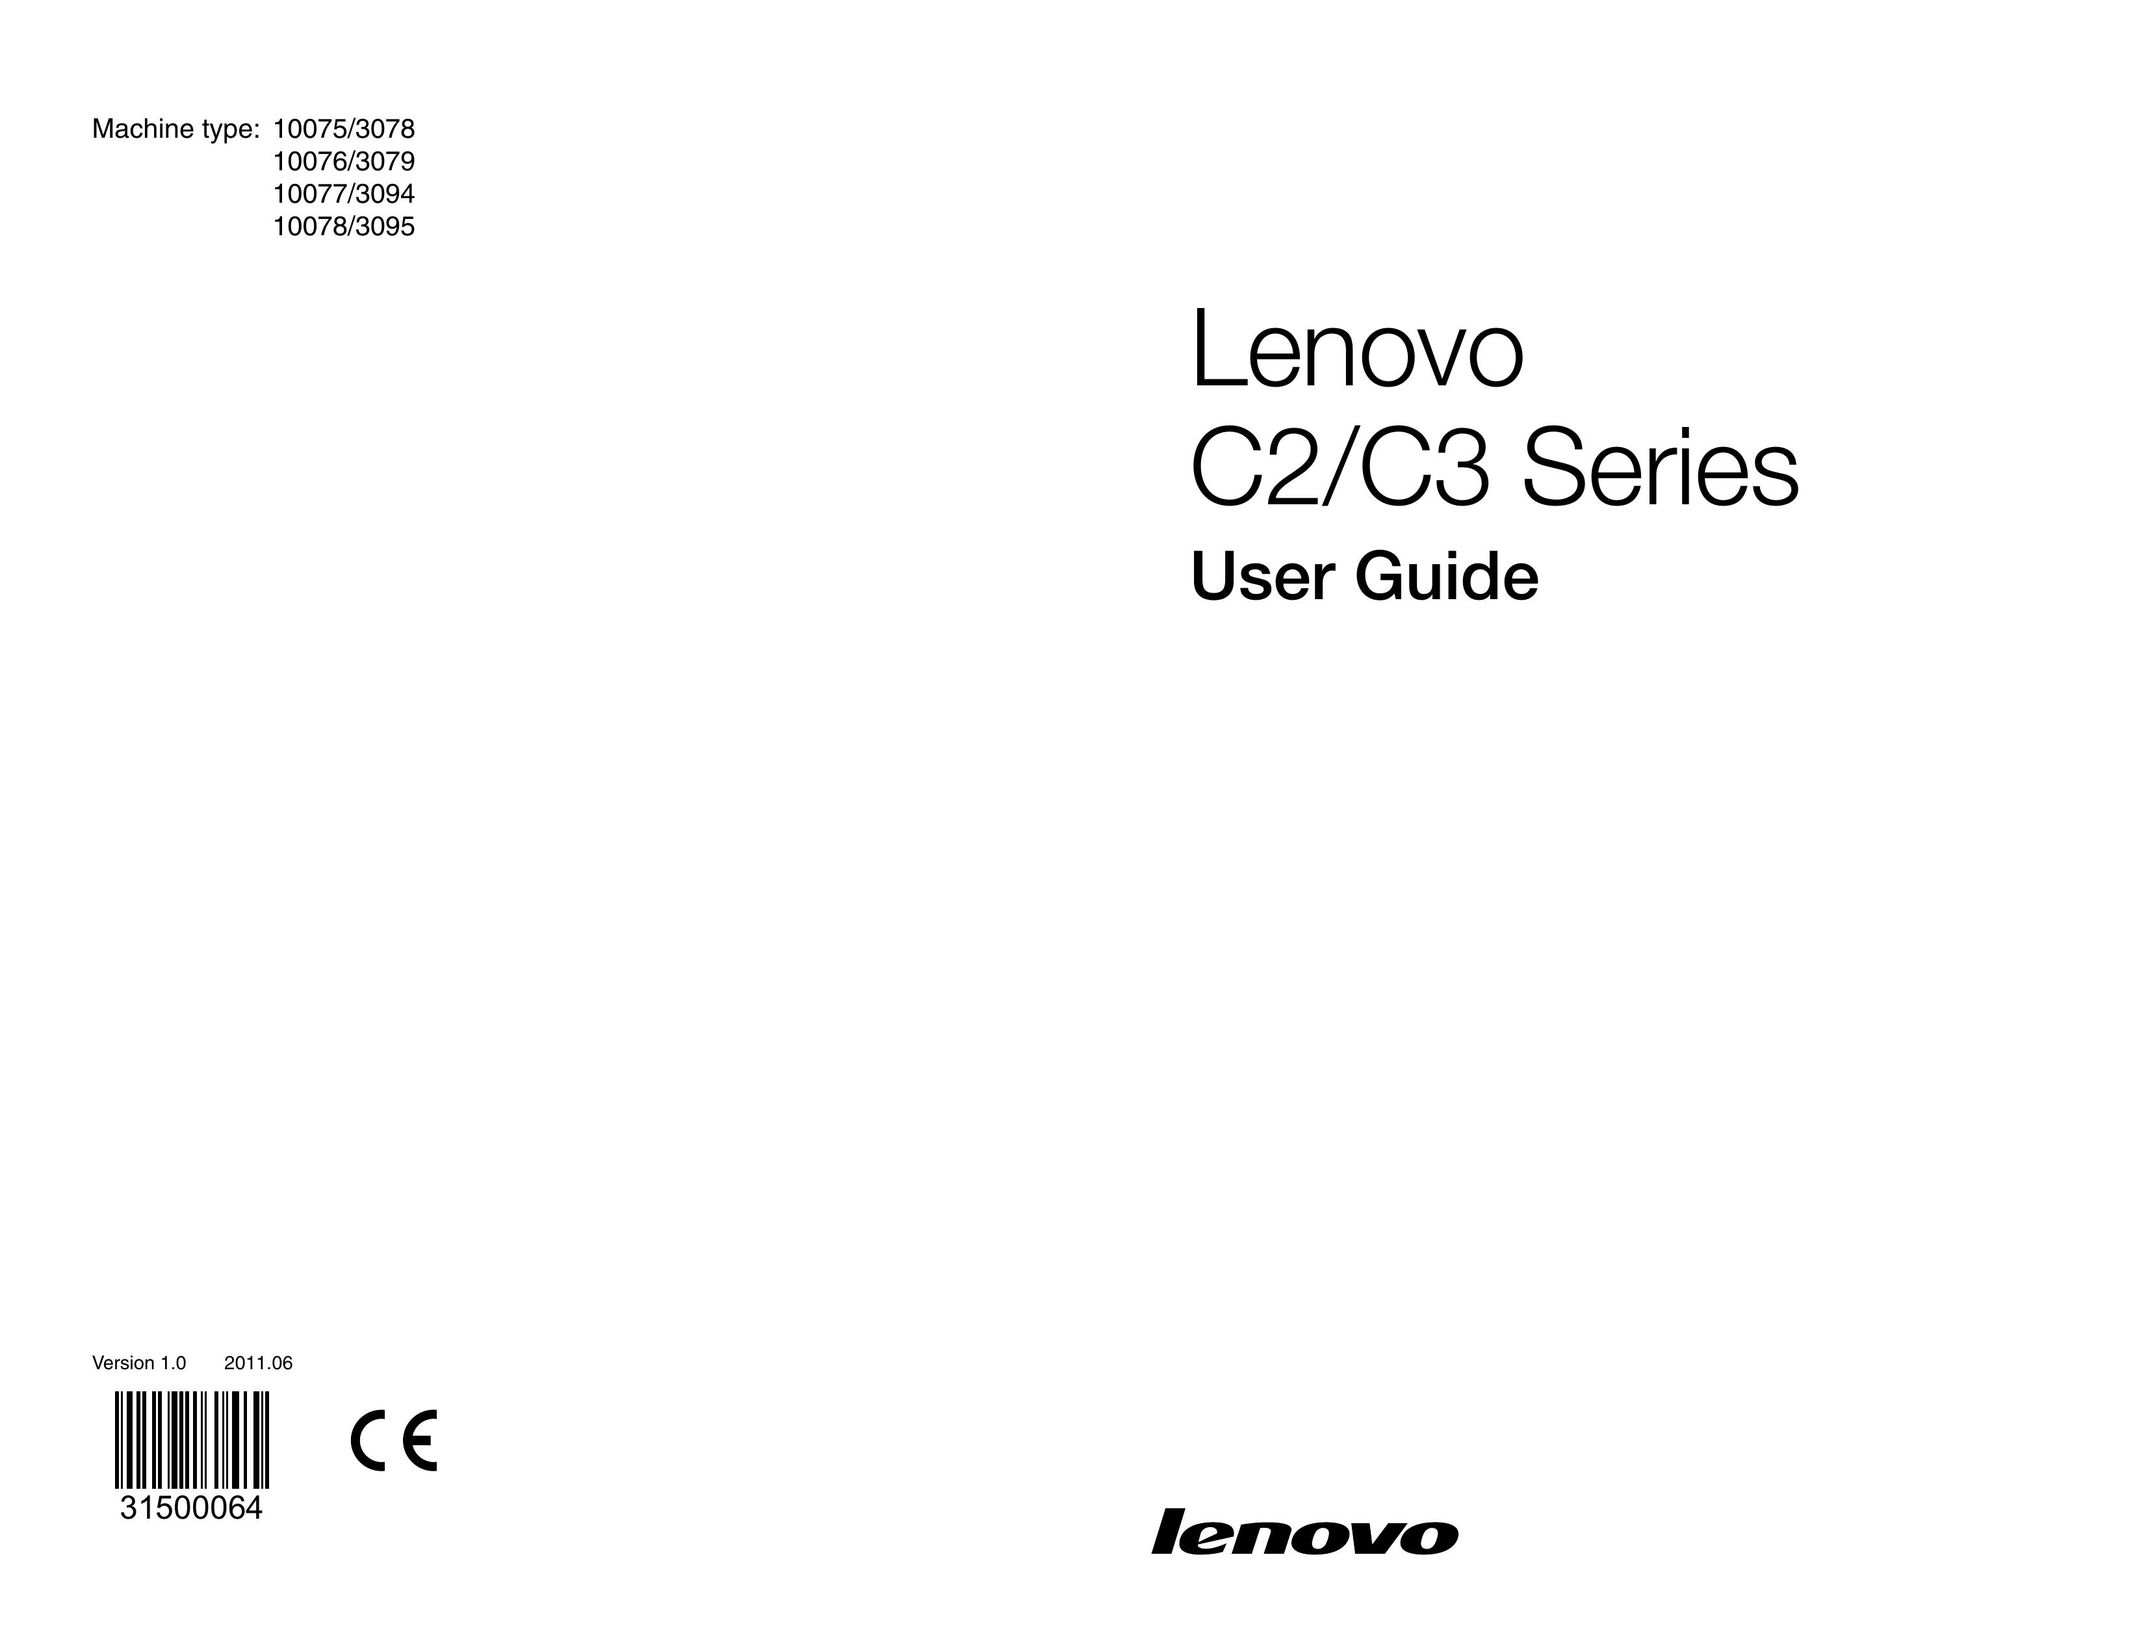 Lenovo 10078/3095 Laptop User Manual